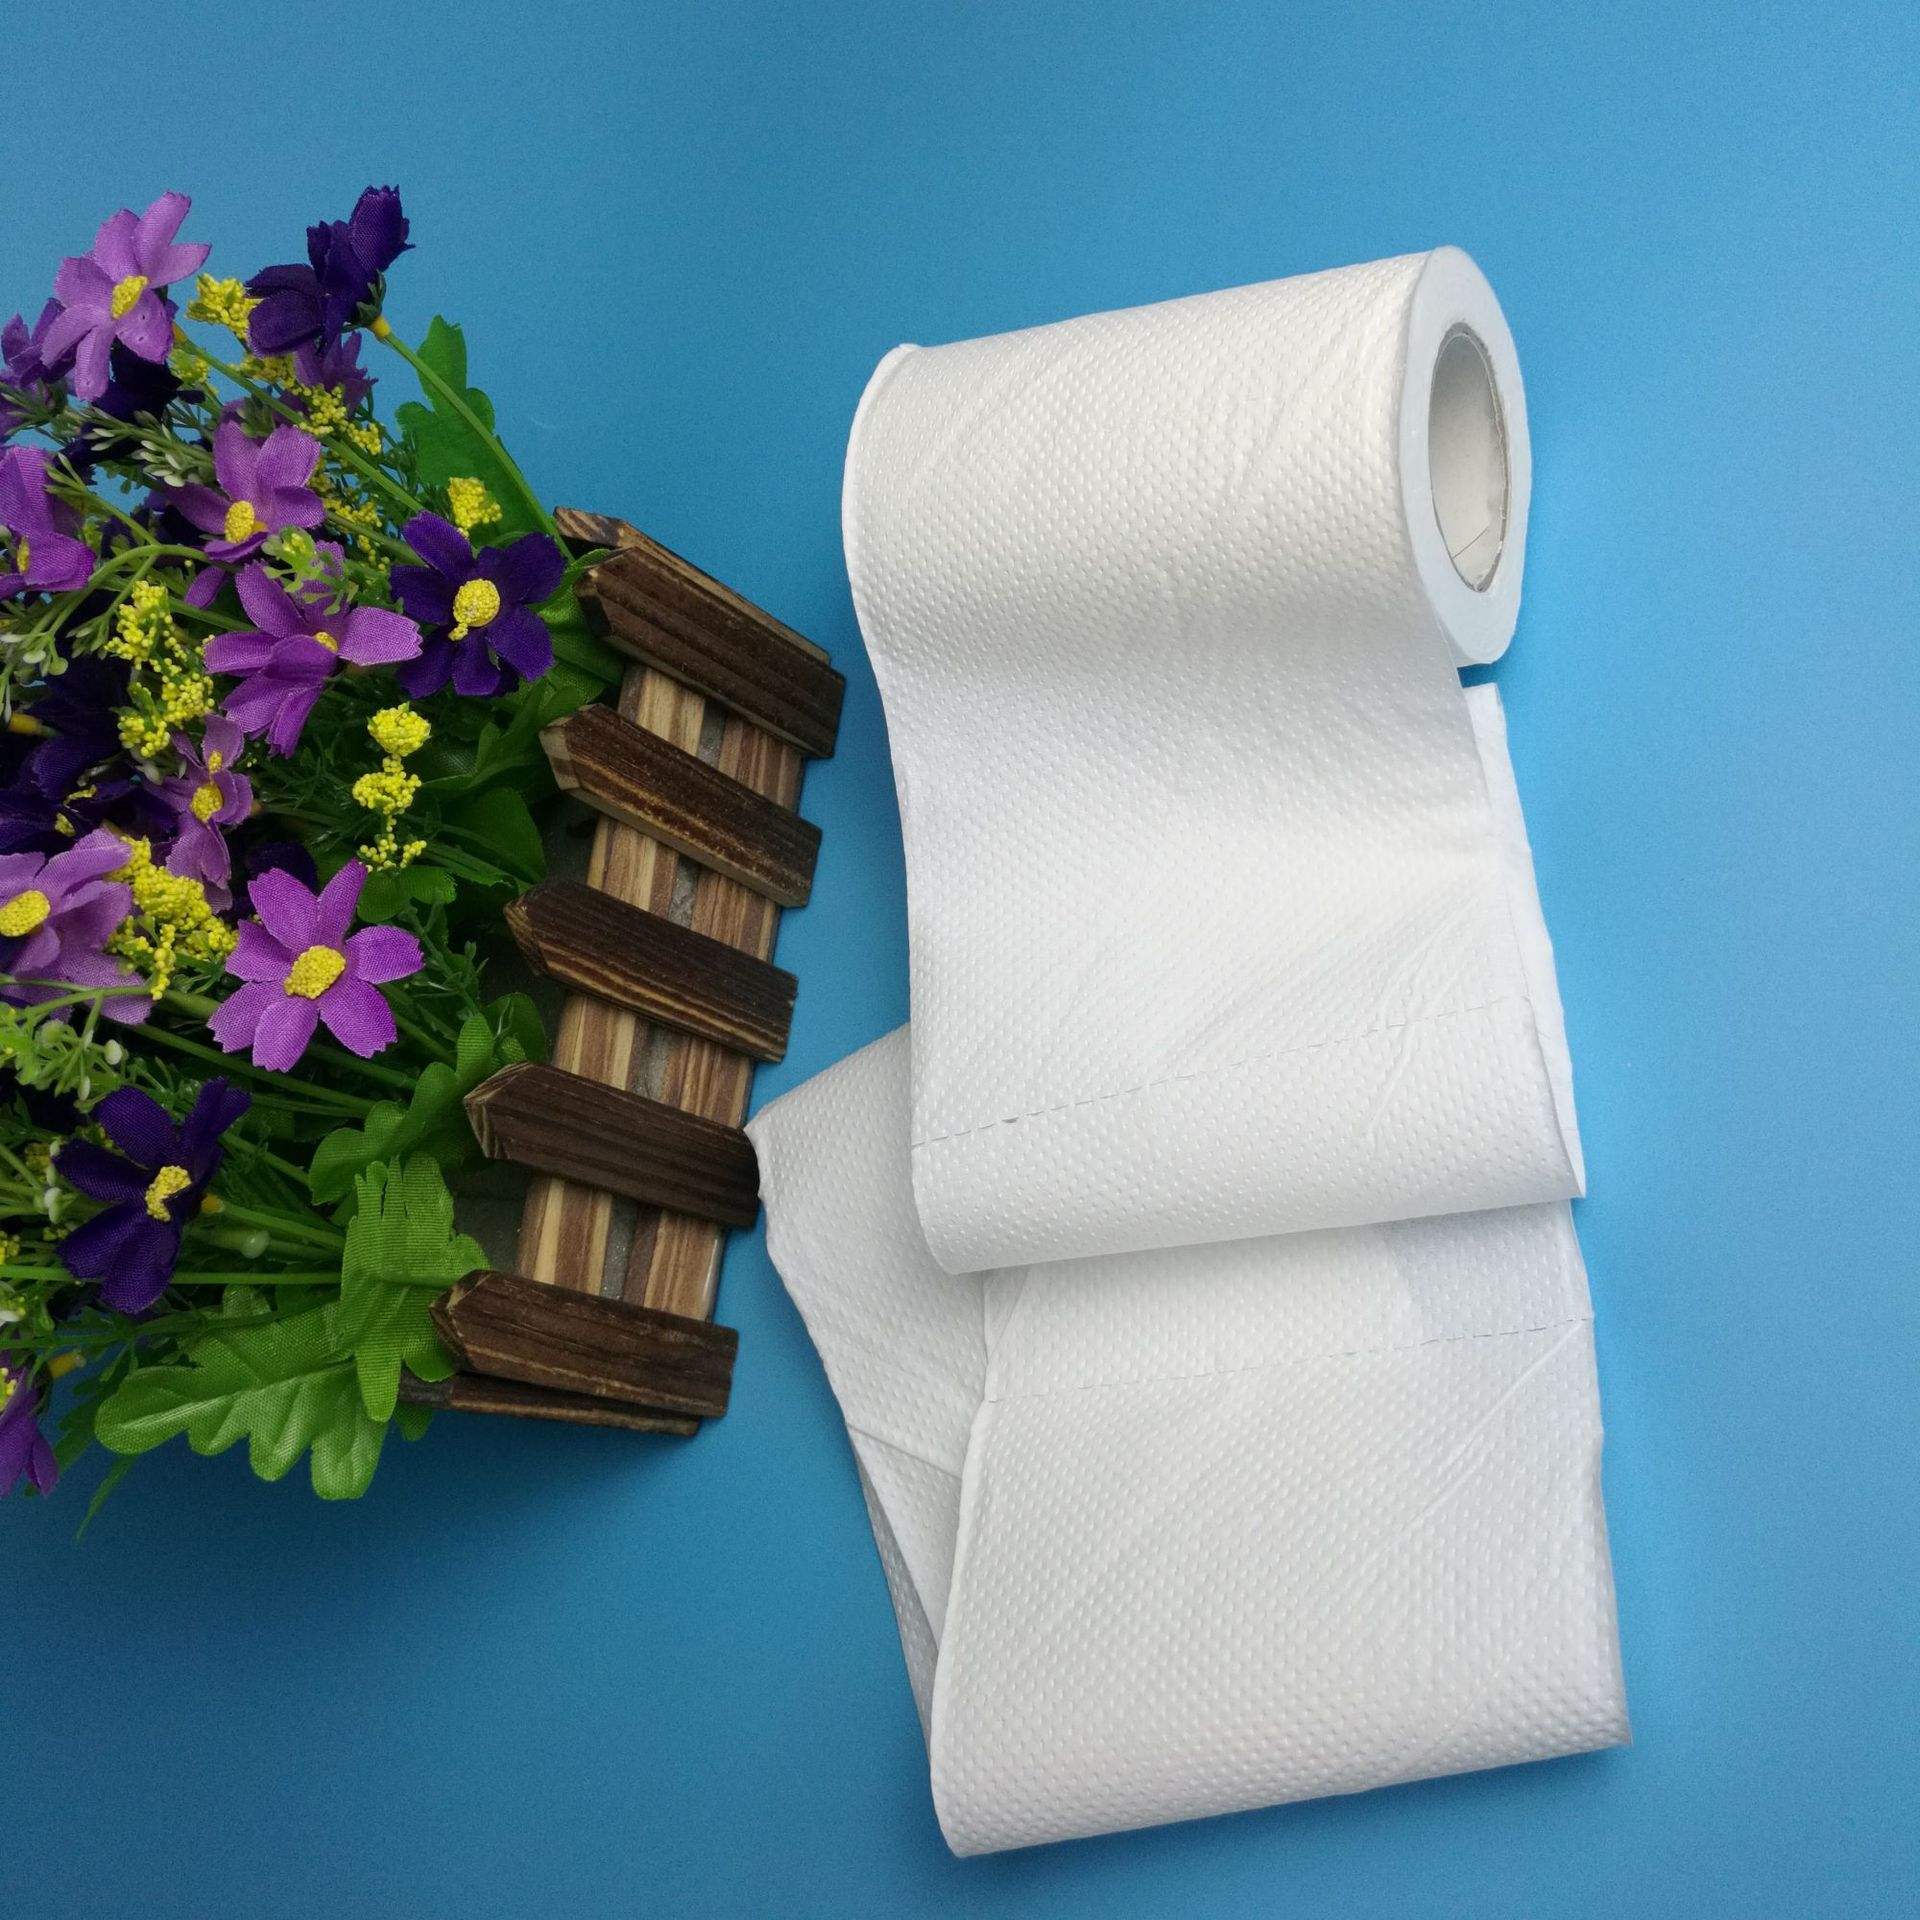 一年内涨价超45% 法国人要用不起厕纸了？